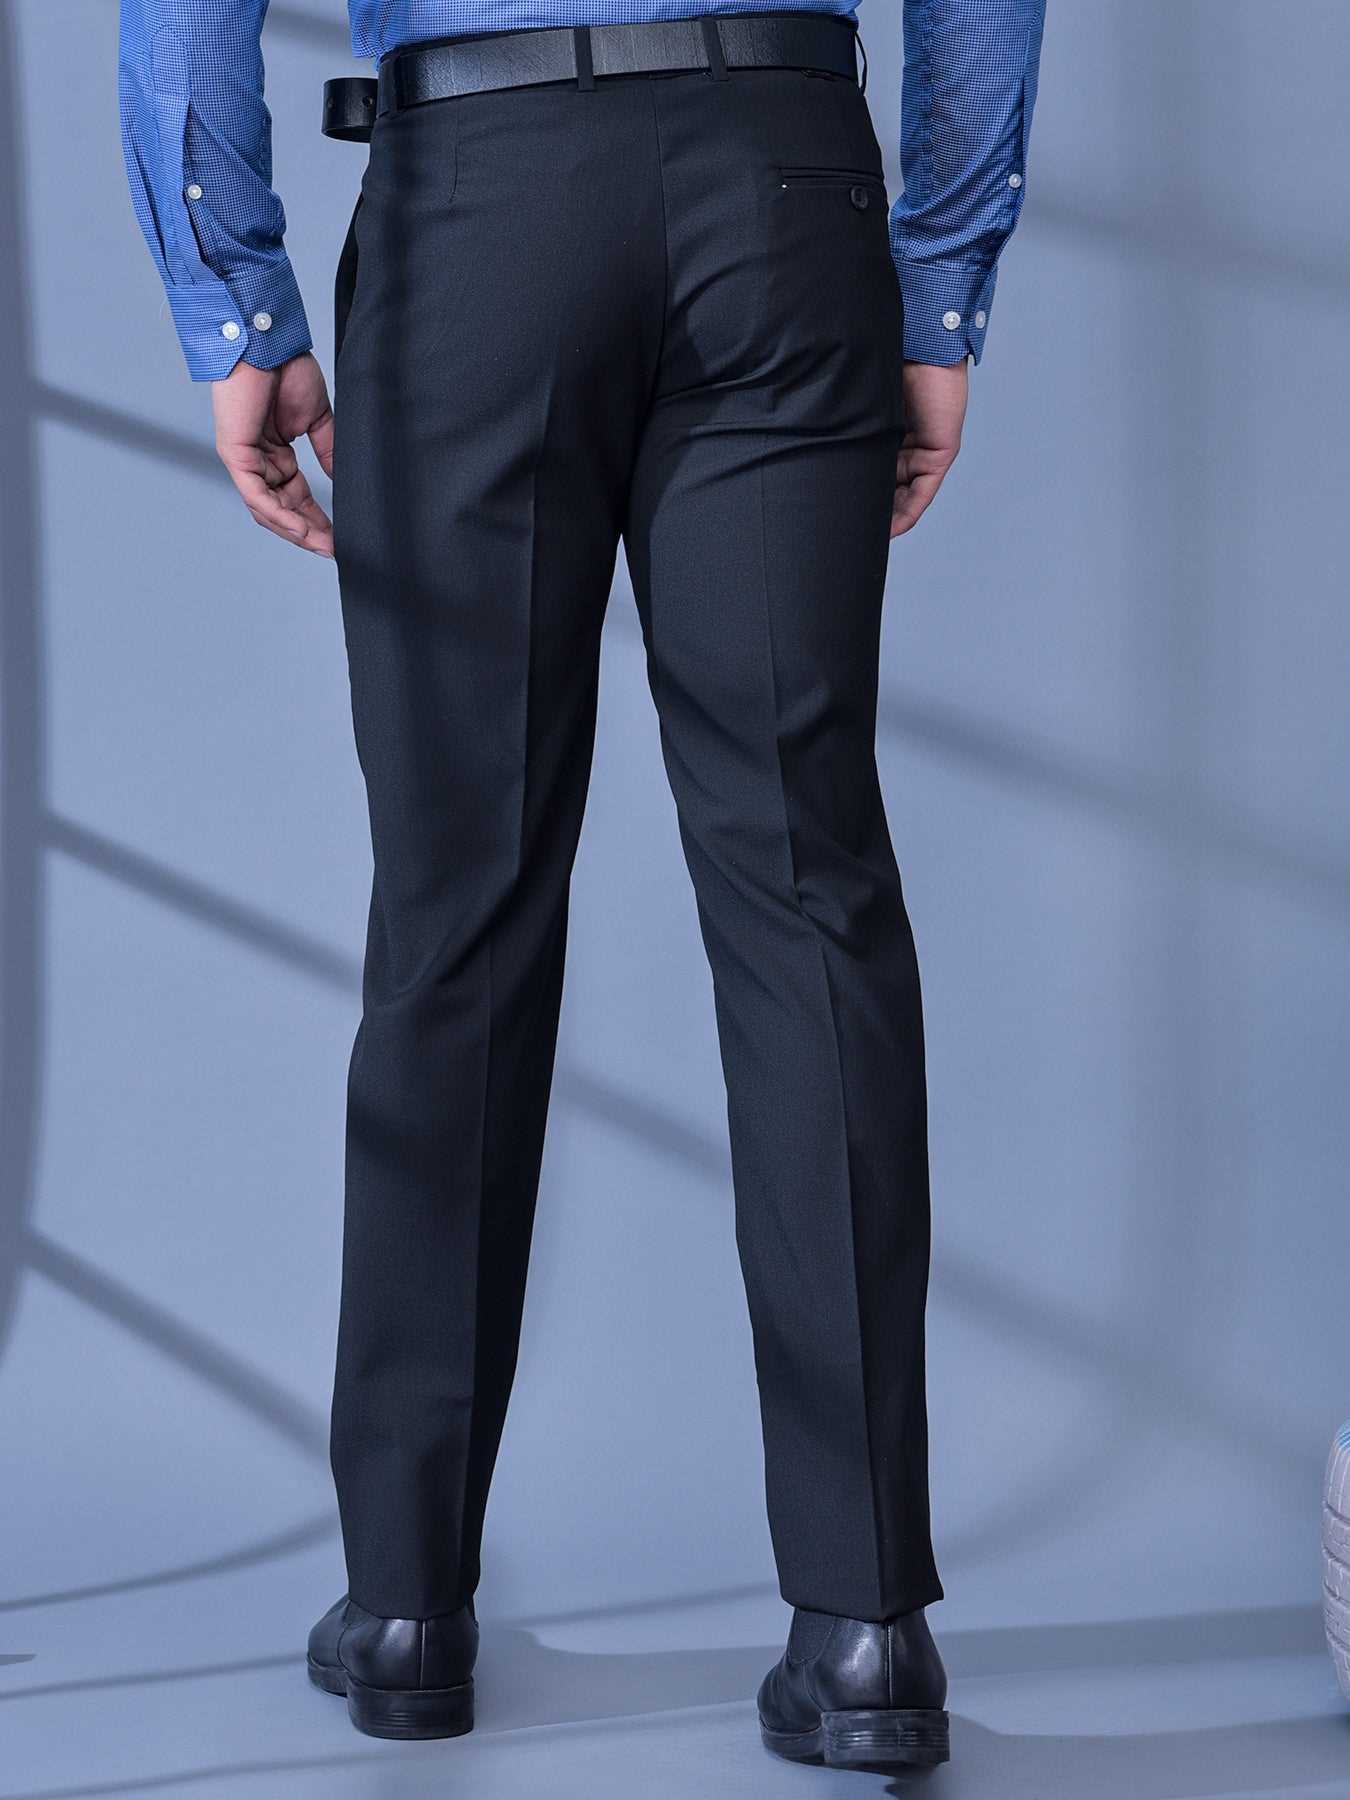 COBB Slim Fit Men Grey Trousers  Buy COBB Slim Fit Men Grey Trousers  Online at Best Prices in India  Flipkartcom